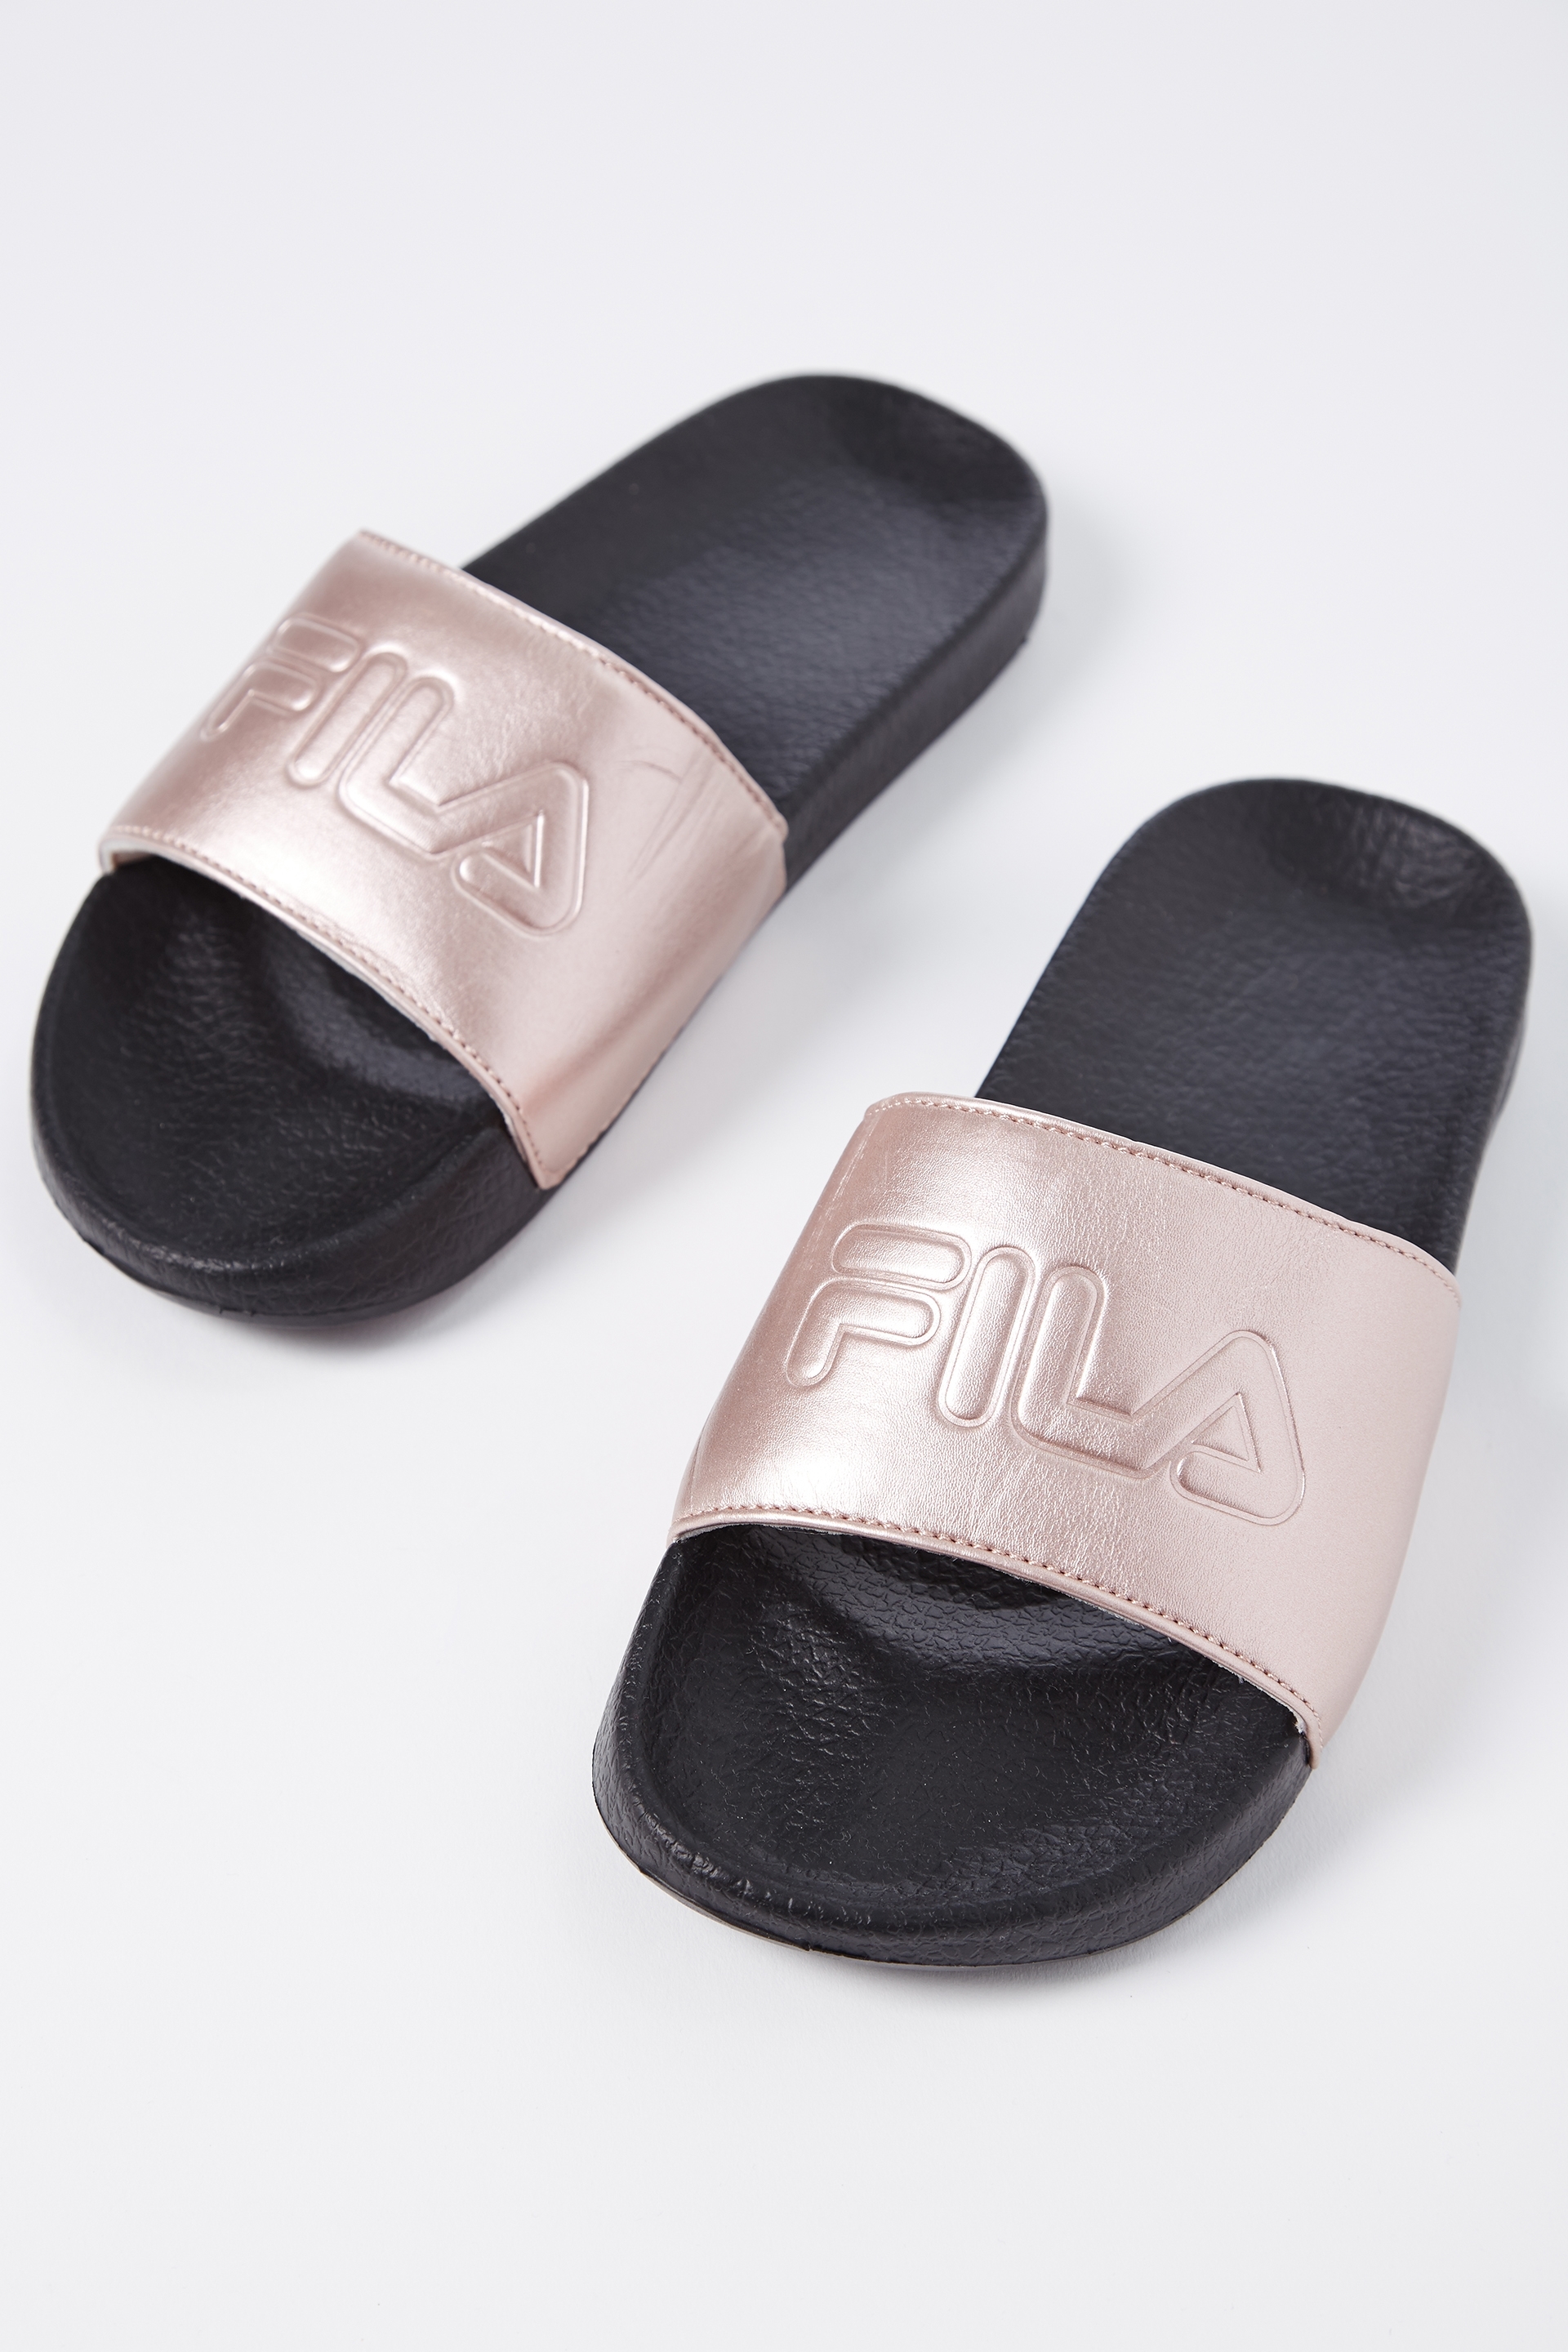 fila sandals mens gold